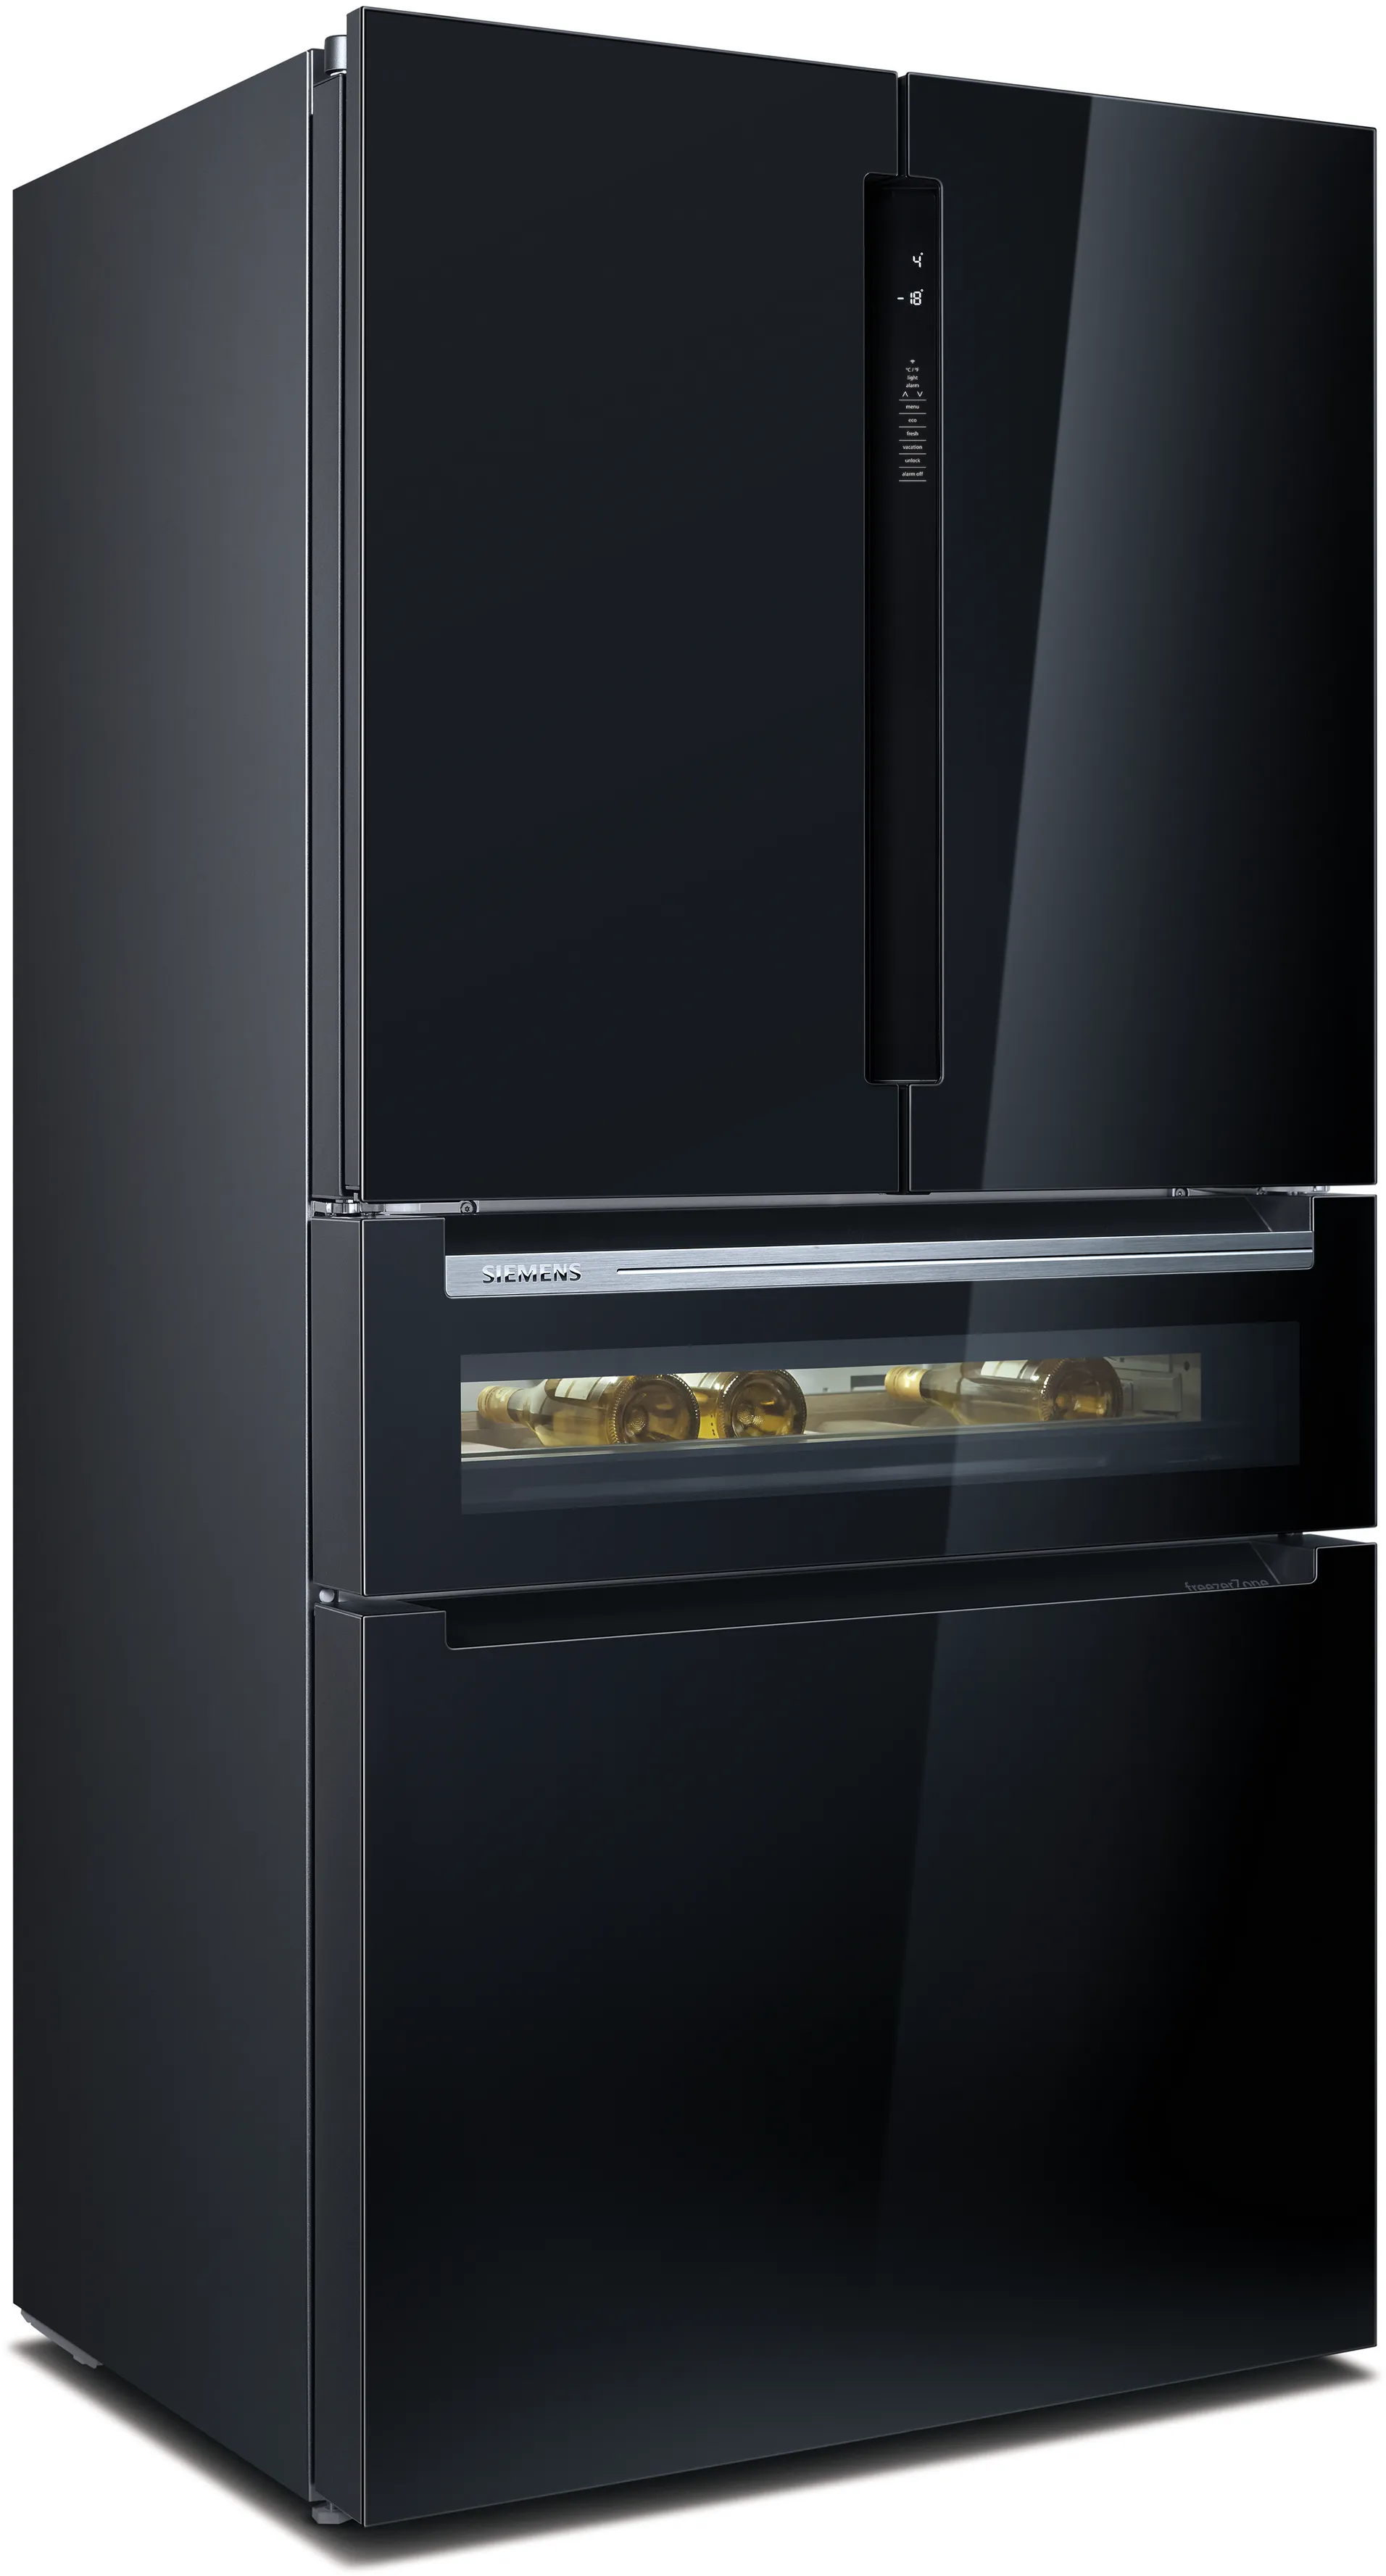 iQ700 French door chladnička s mrazákem dole, skleněné dveře 183 x 90.5 cm černá 